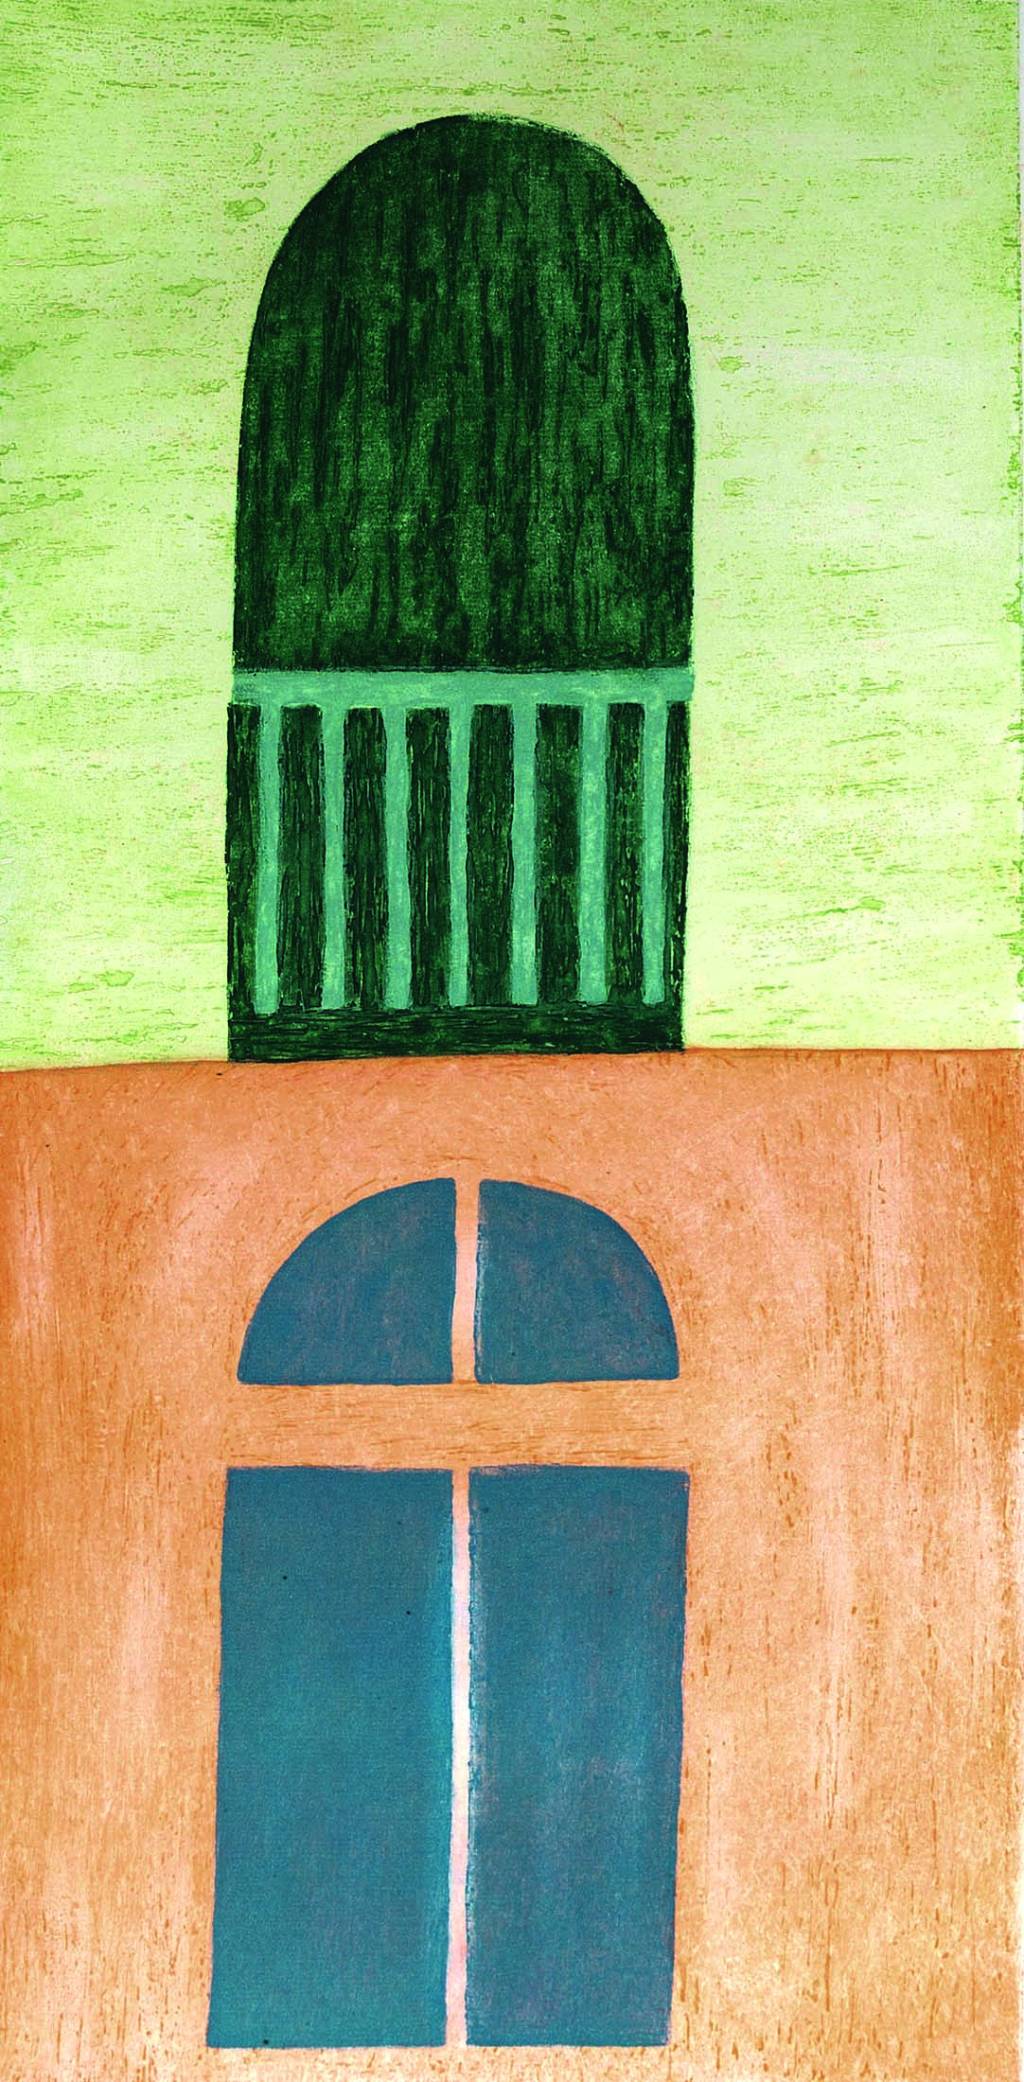 Quadro de Volpi. Uma casa verde e laranja com janela e porta